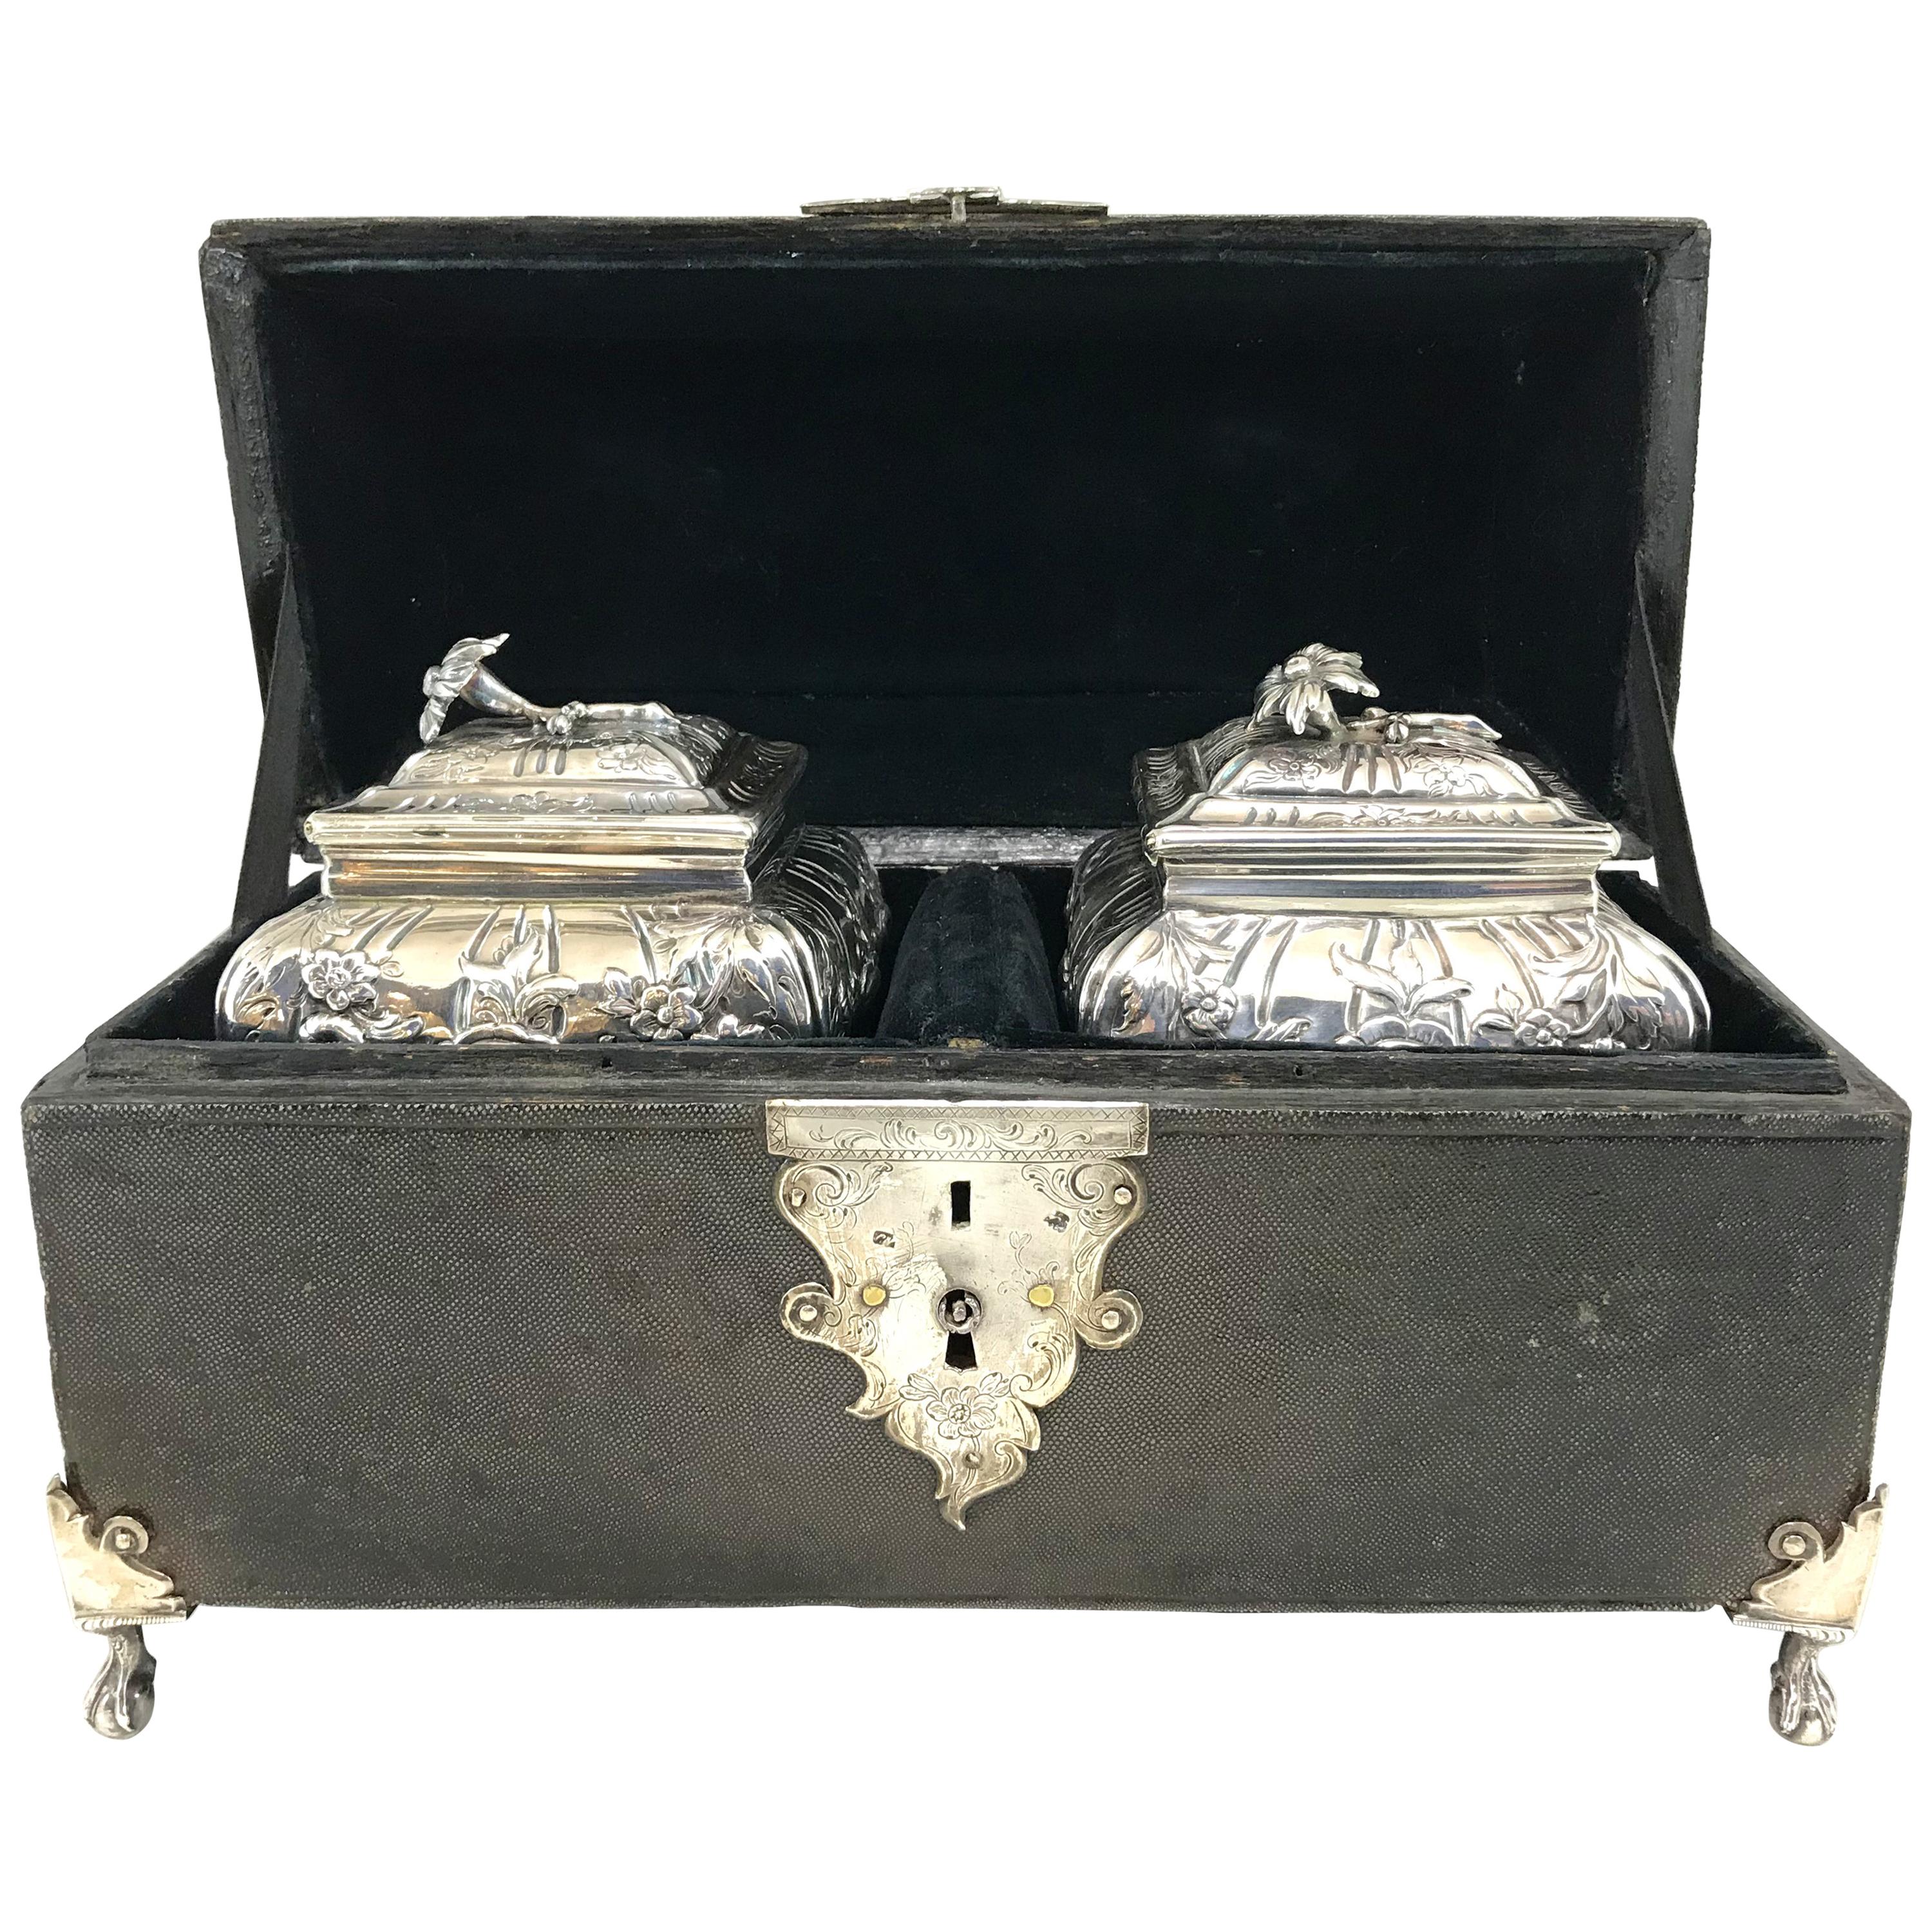 Une exceptionnelle boîte à thé en galuchat de George III, avec des pieds en argent à boule et griffes, une plaque d'écusson à trou de serrure en argent ciselé de feuillages, une plaque de poignée décorative en forme de volute et une poignée avec un